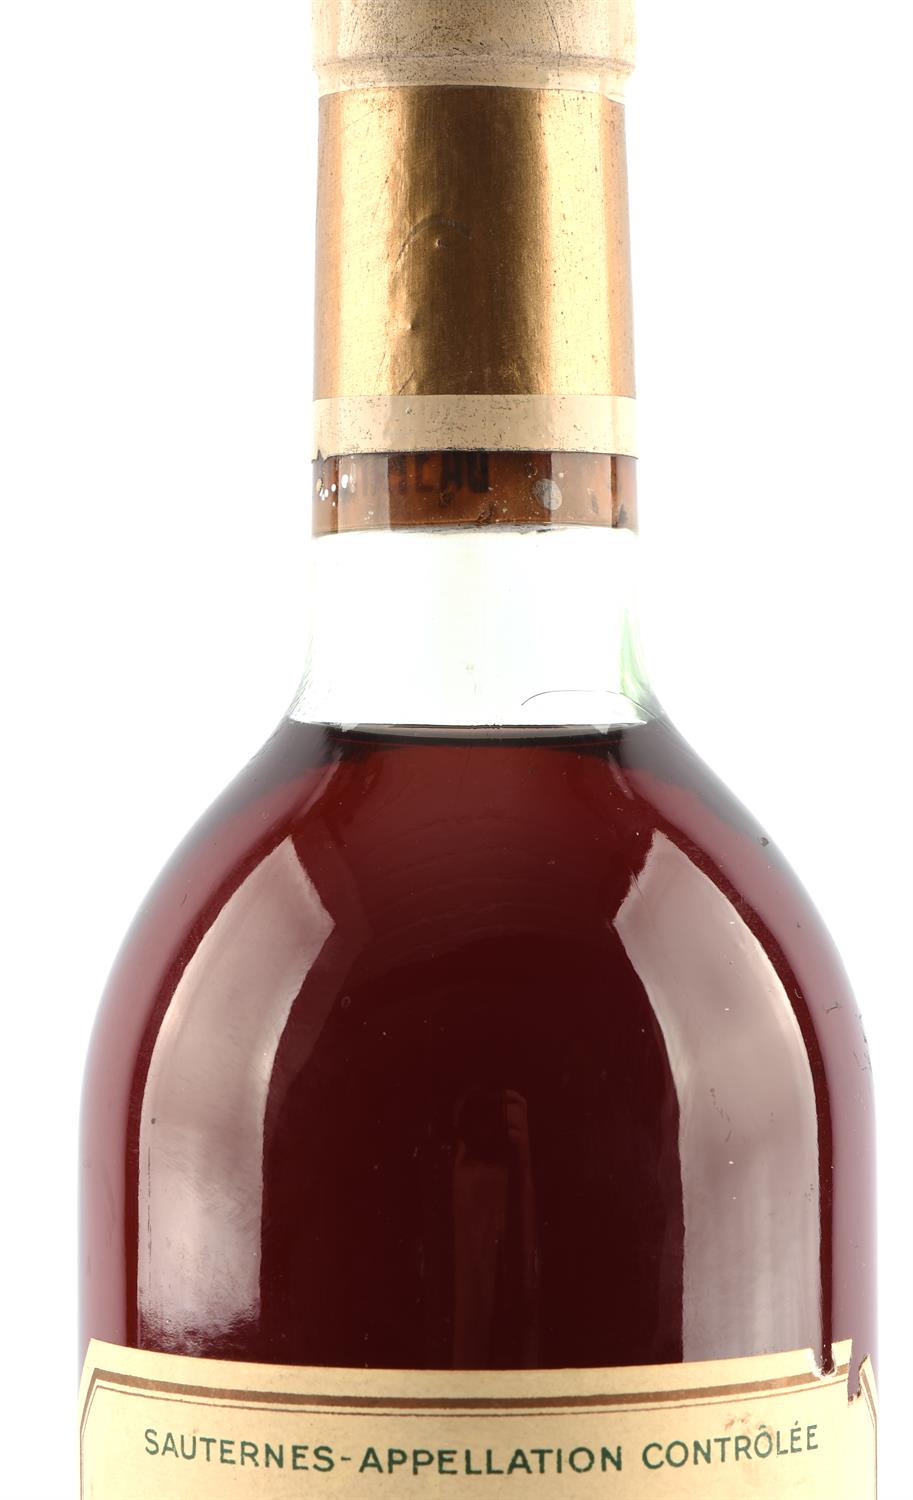 Sauternes, One bottle of 1954 Chateau d' Yquem Sur Saluces (1) - Image 3 of 4